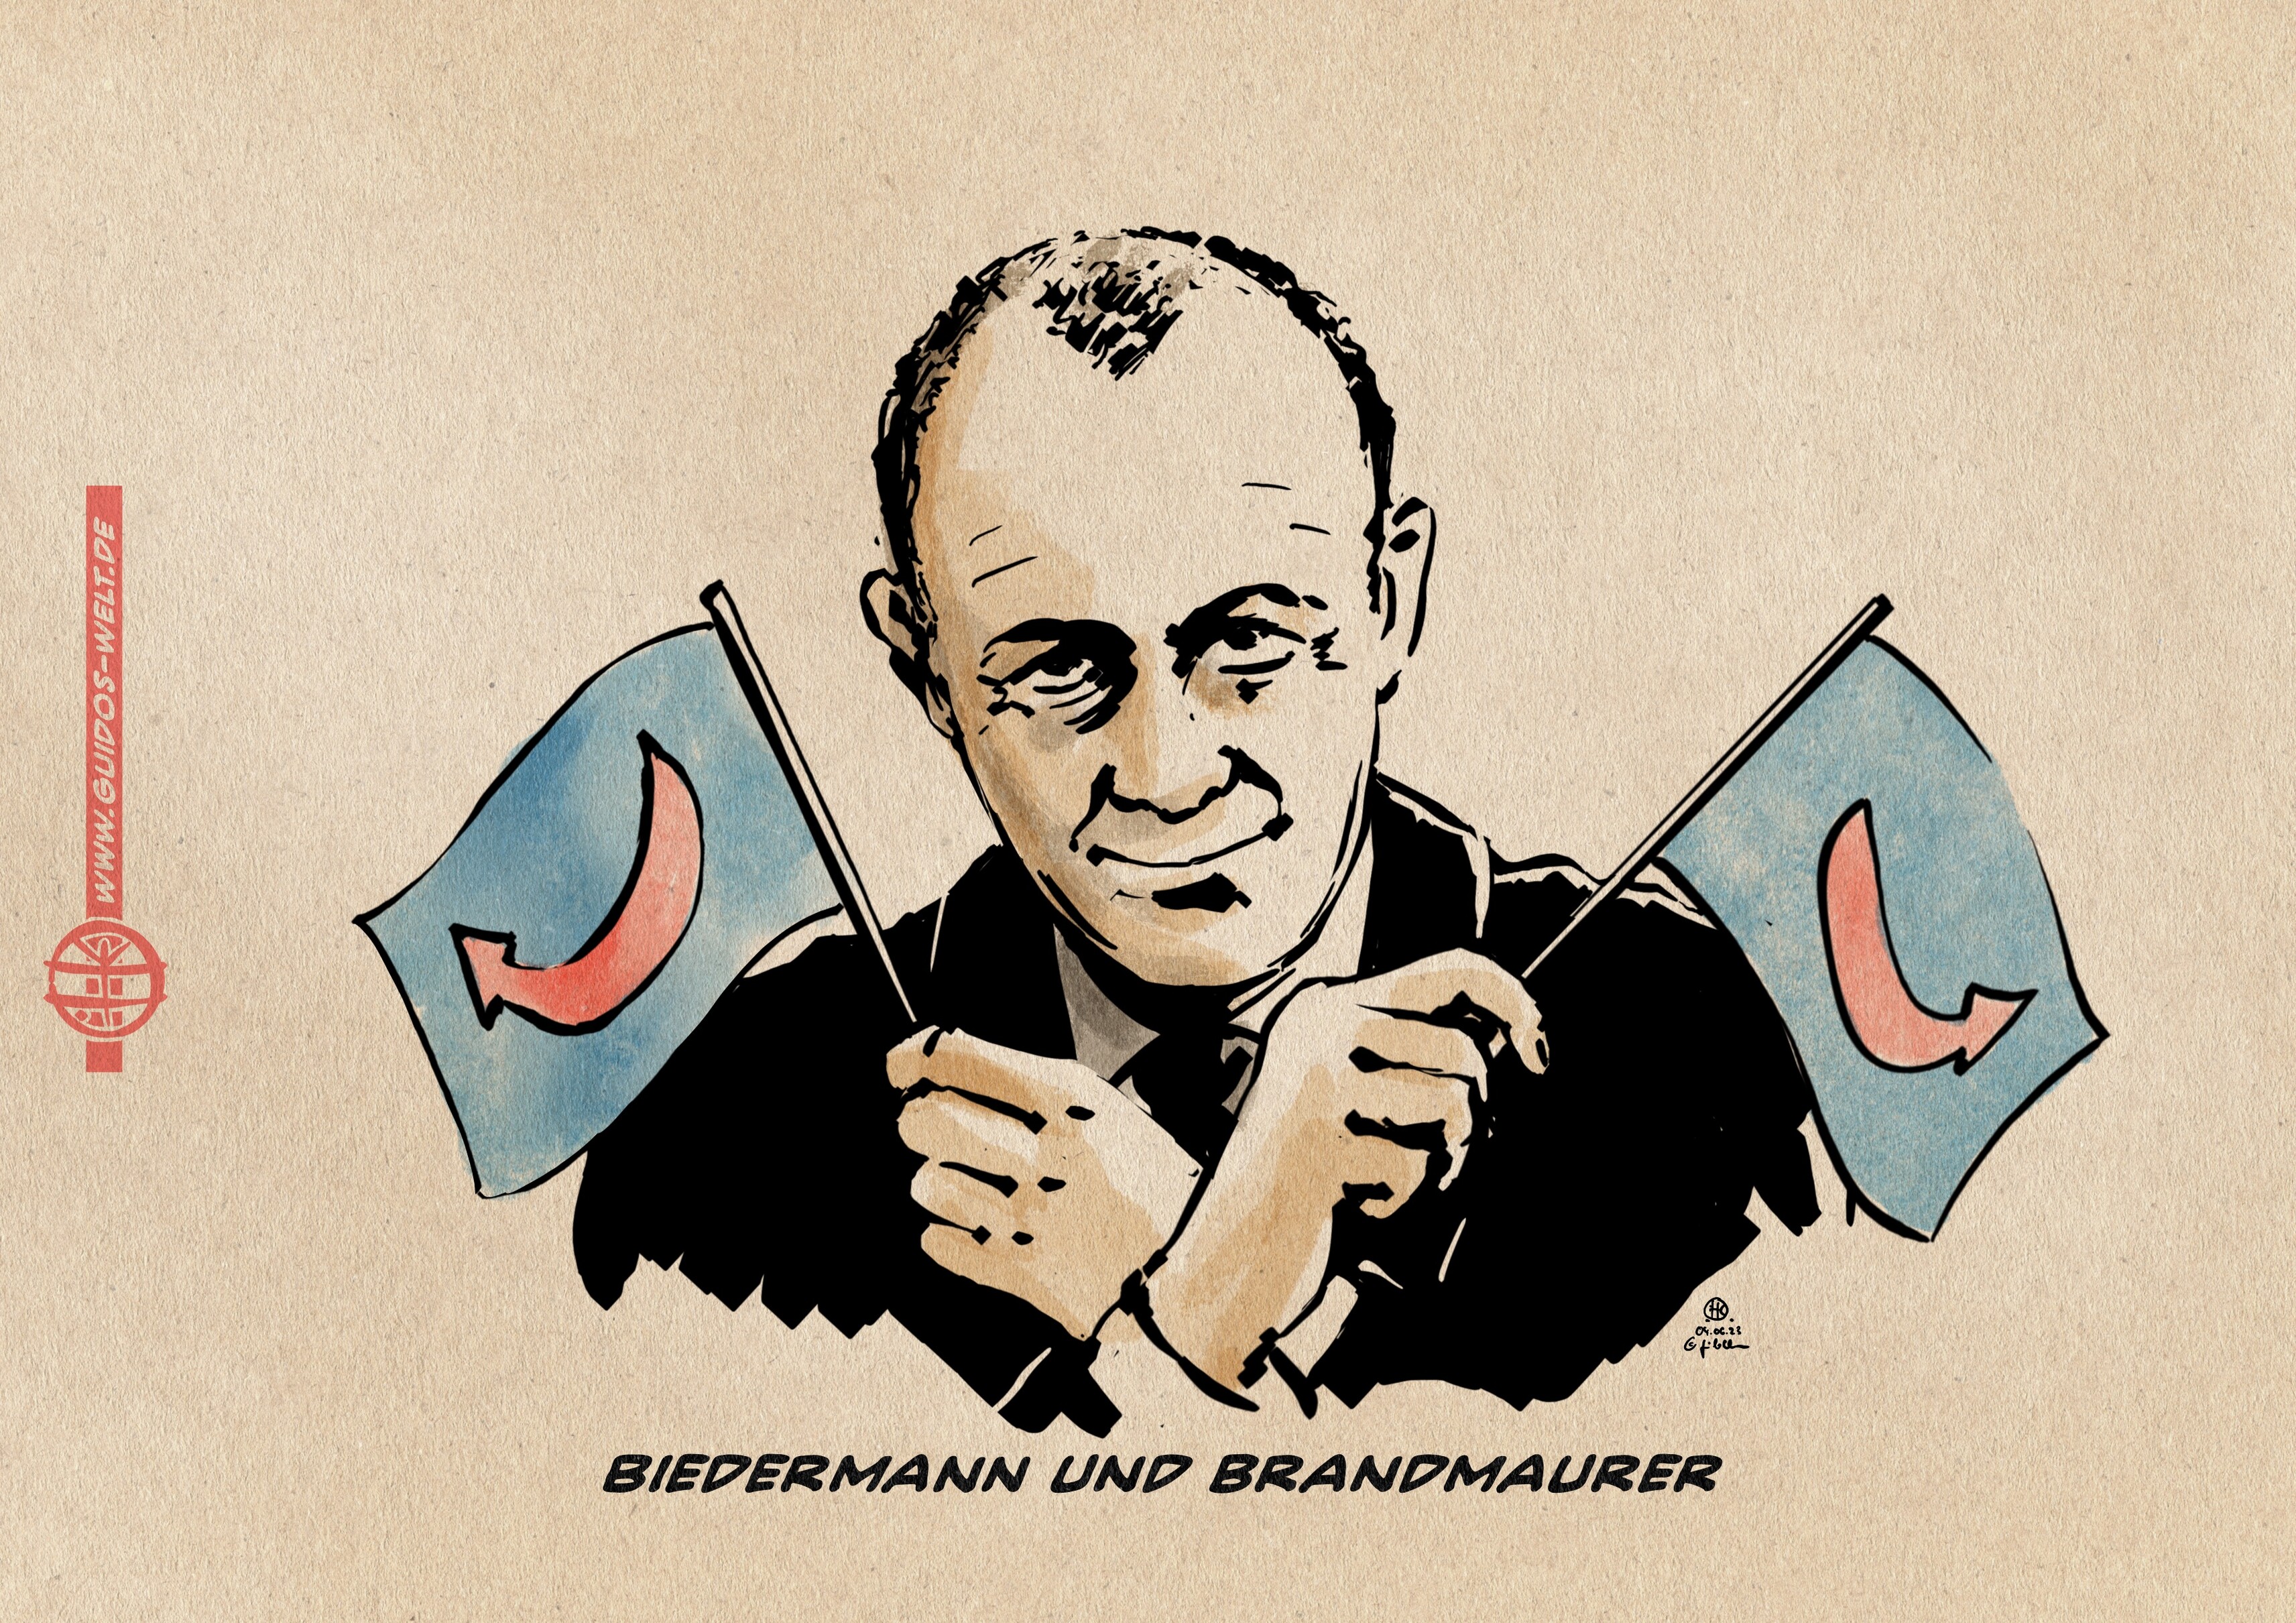 Illustration F. Merz lächelt zum Betracher vorgebeugt, zwei AFD Fähnchen haltend. Textzeile: Biedermann und Brandmaurer